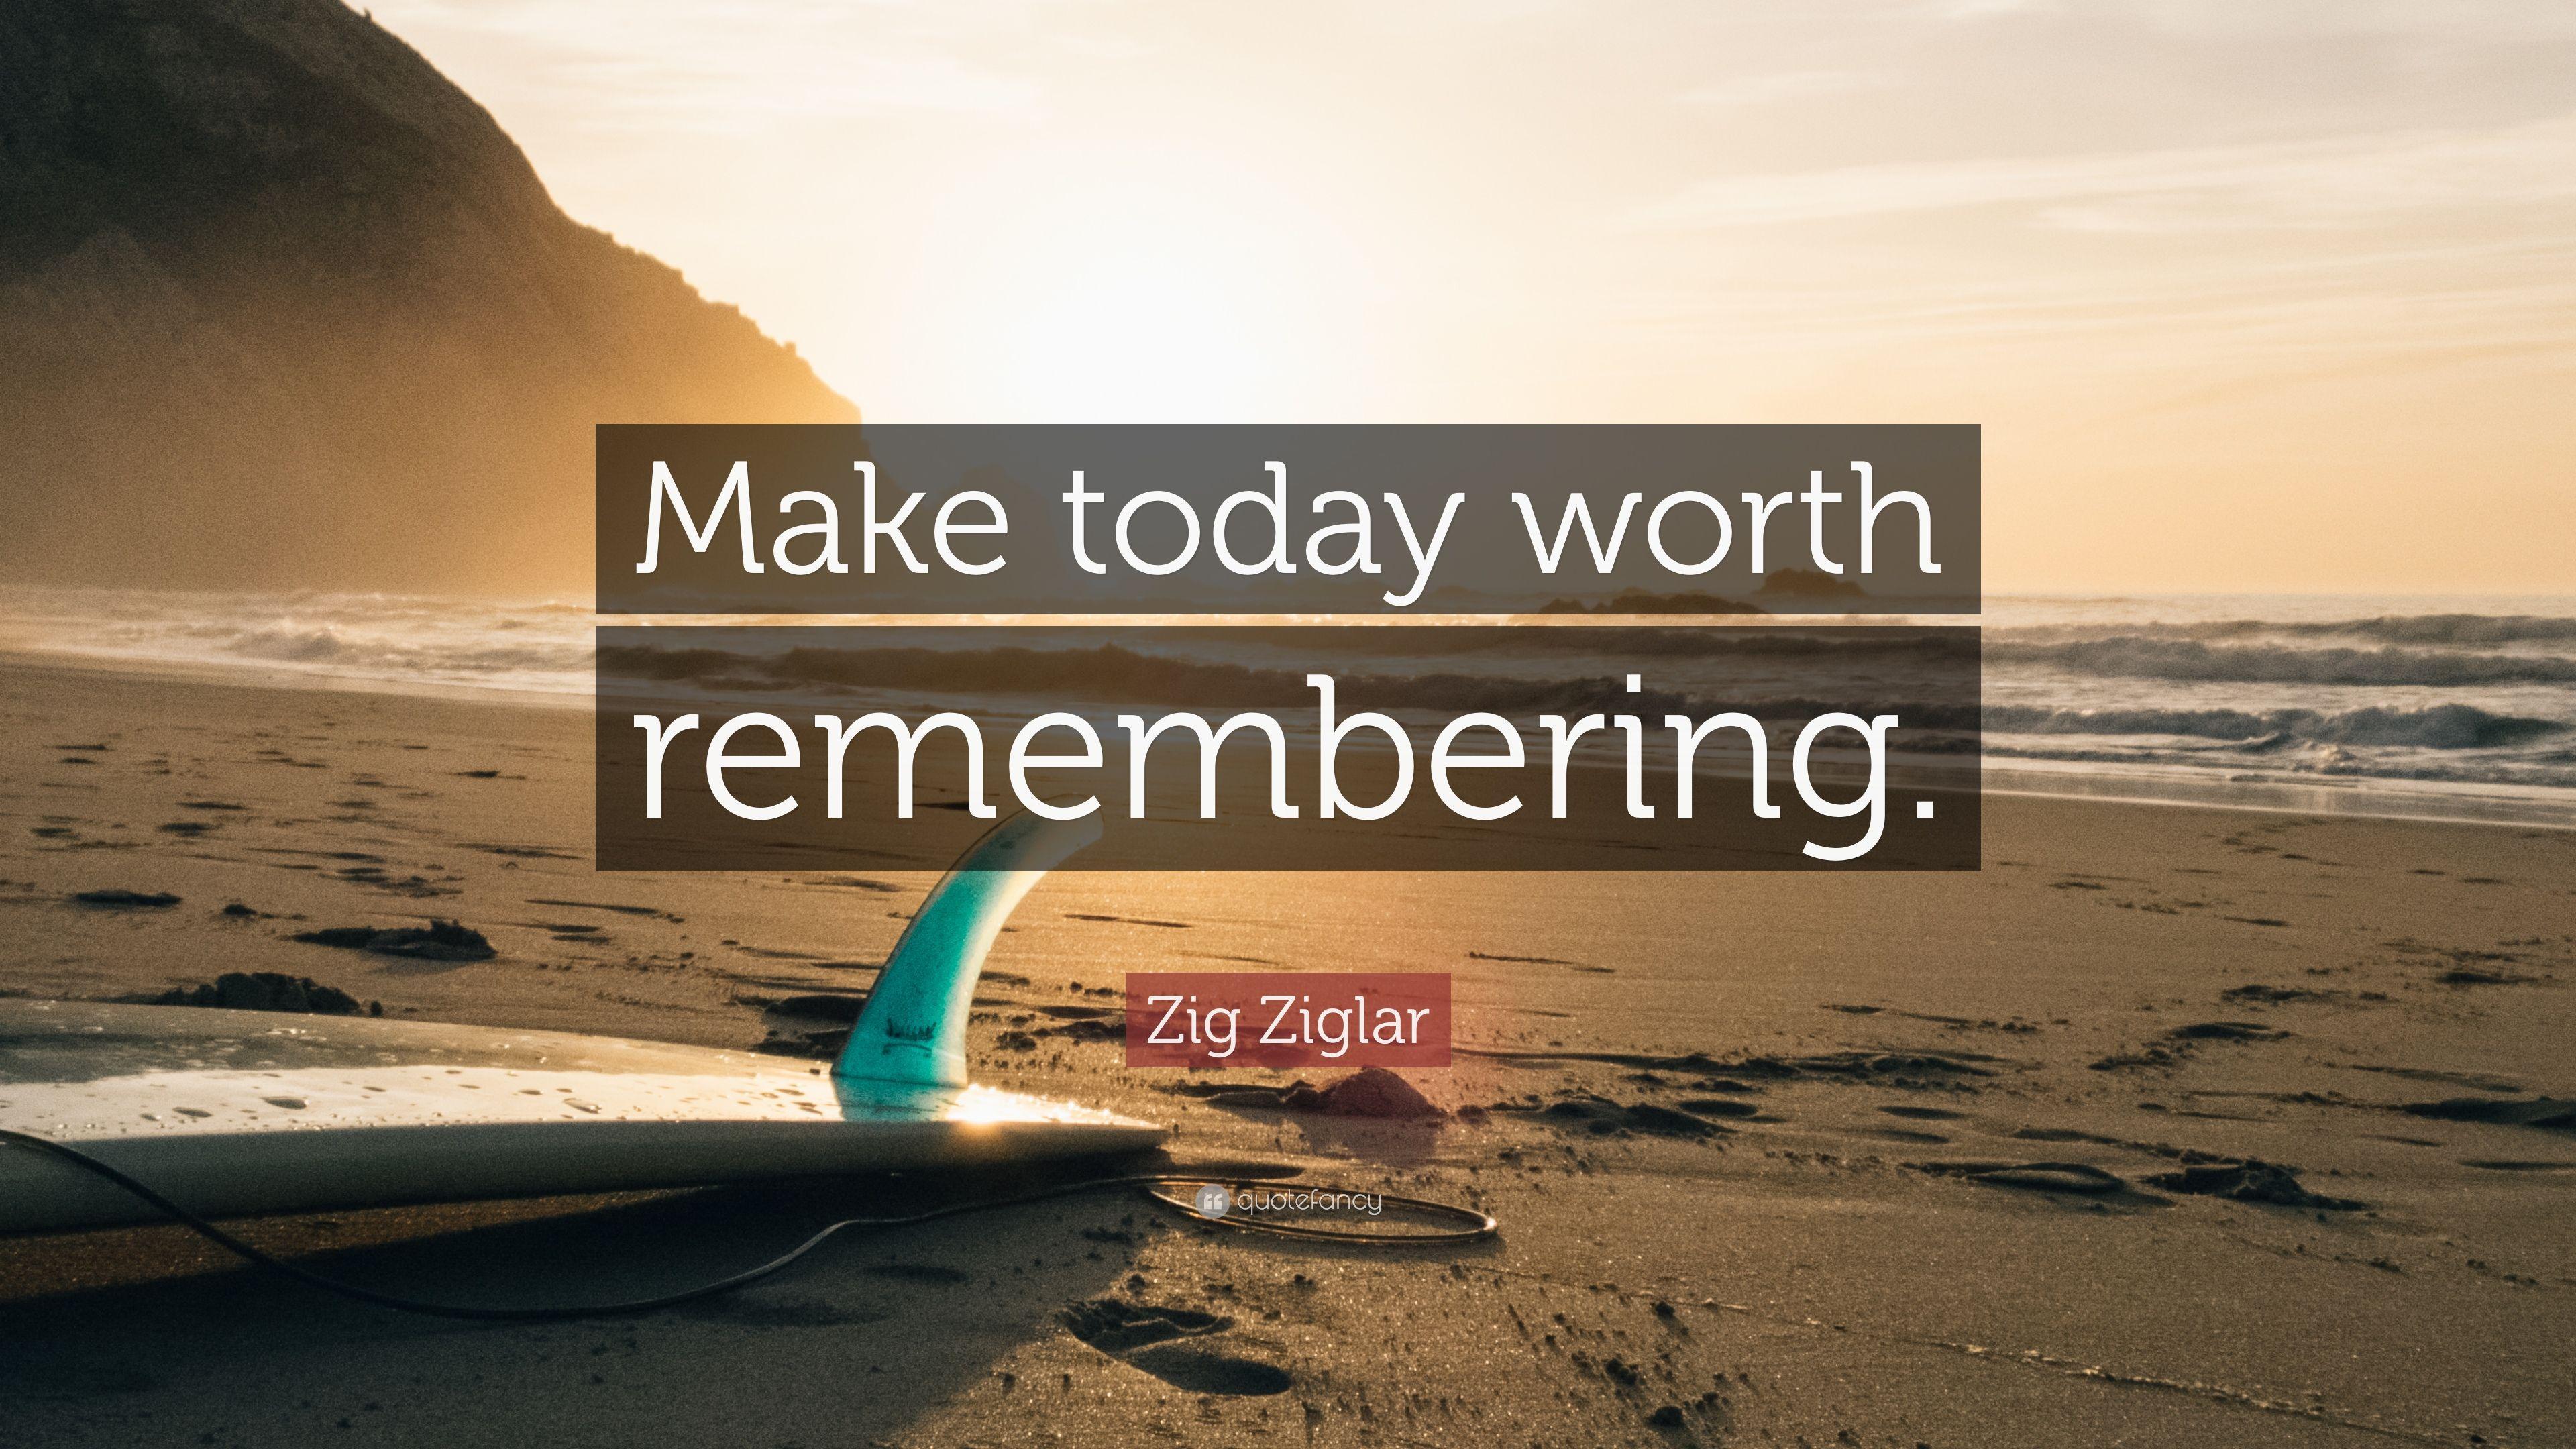 Zig Ziglar Quote: “Make today worth remembering.” 21 wallpaper